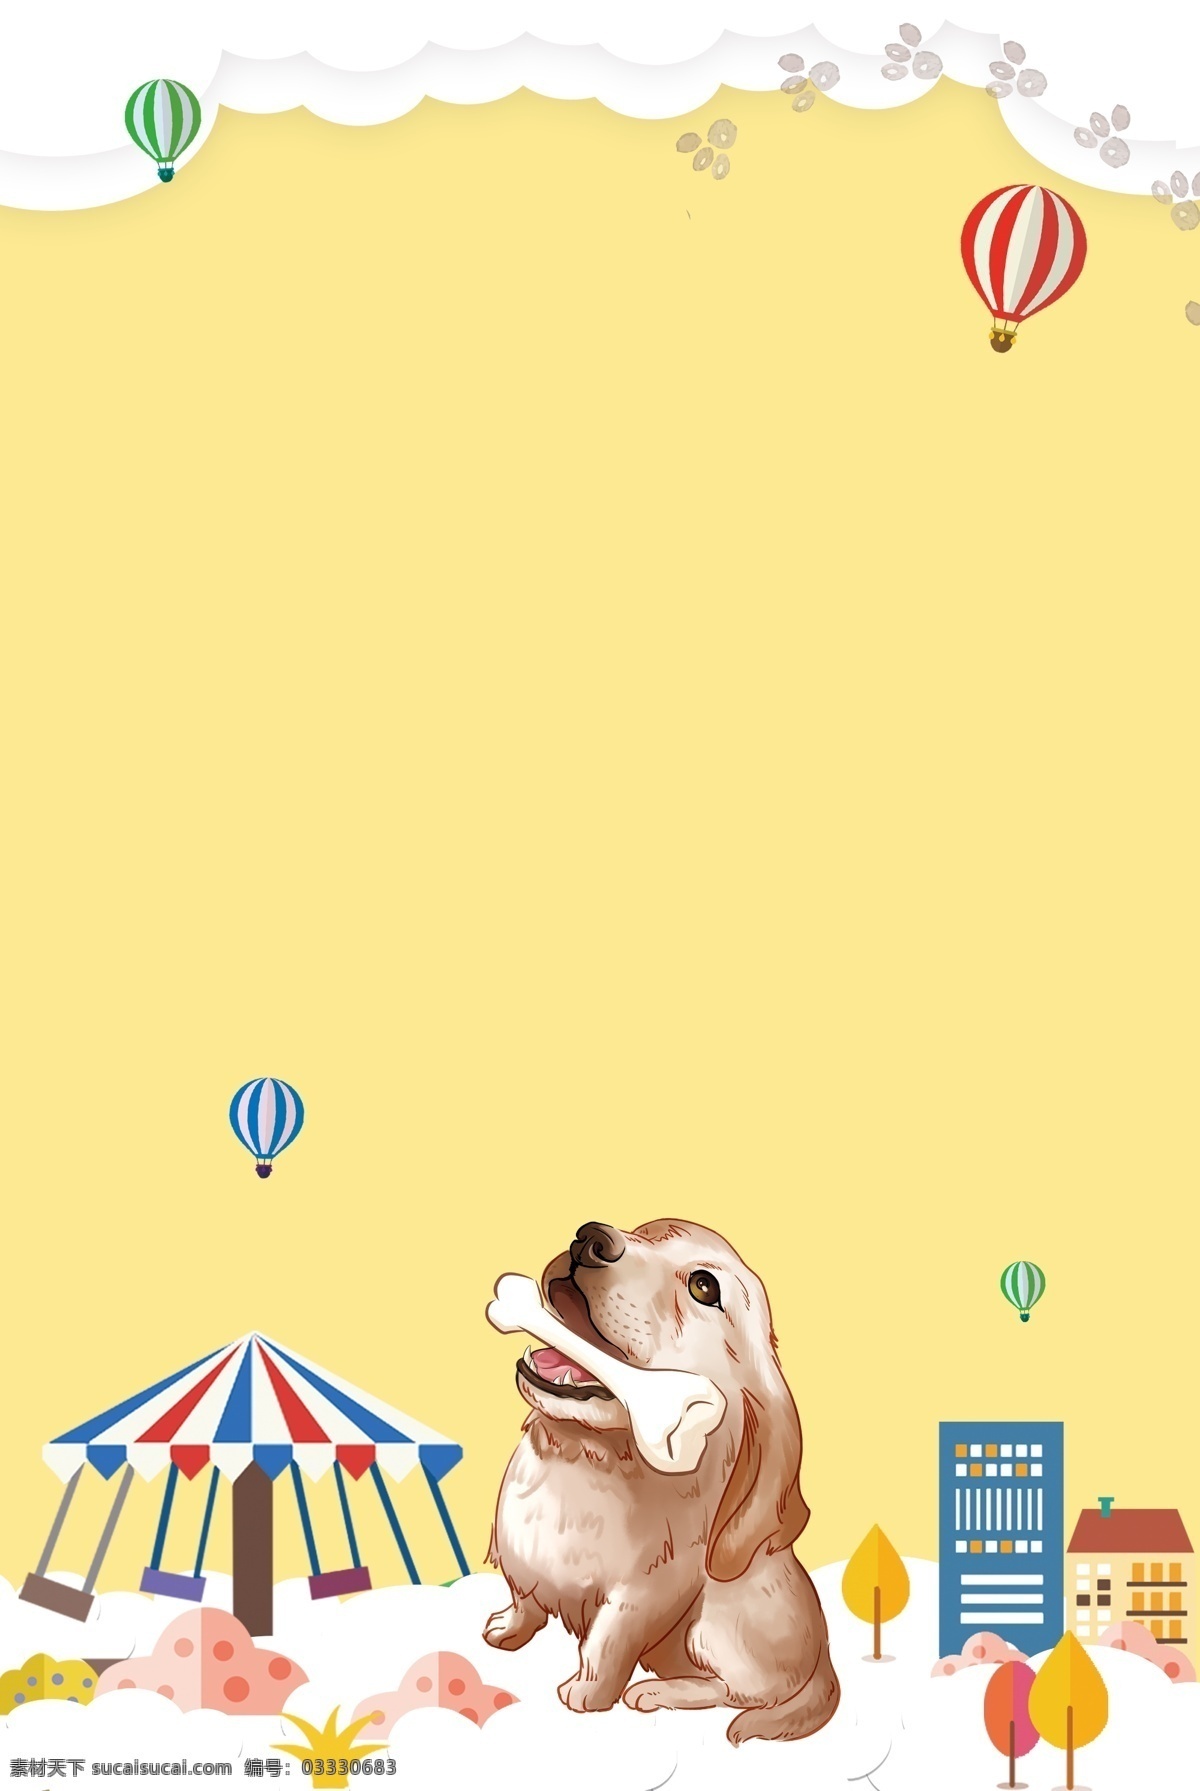 猫 狗 宠物 小 动物 领养 店 游乐场 热气球 卡通插画 猫窝 宠物店 宠物美容 爱心 骨头 飞伞